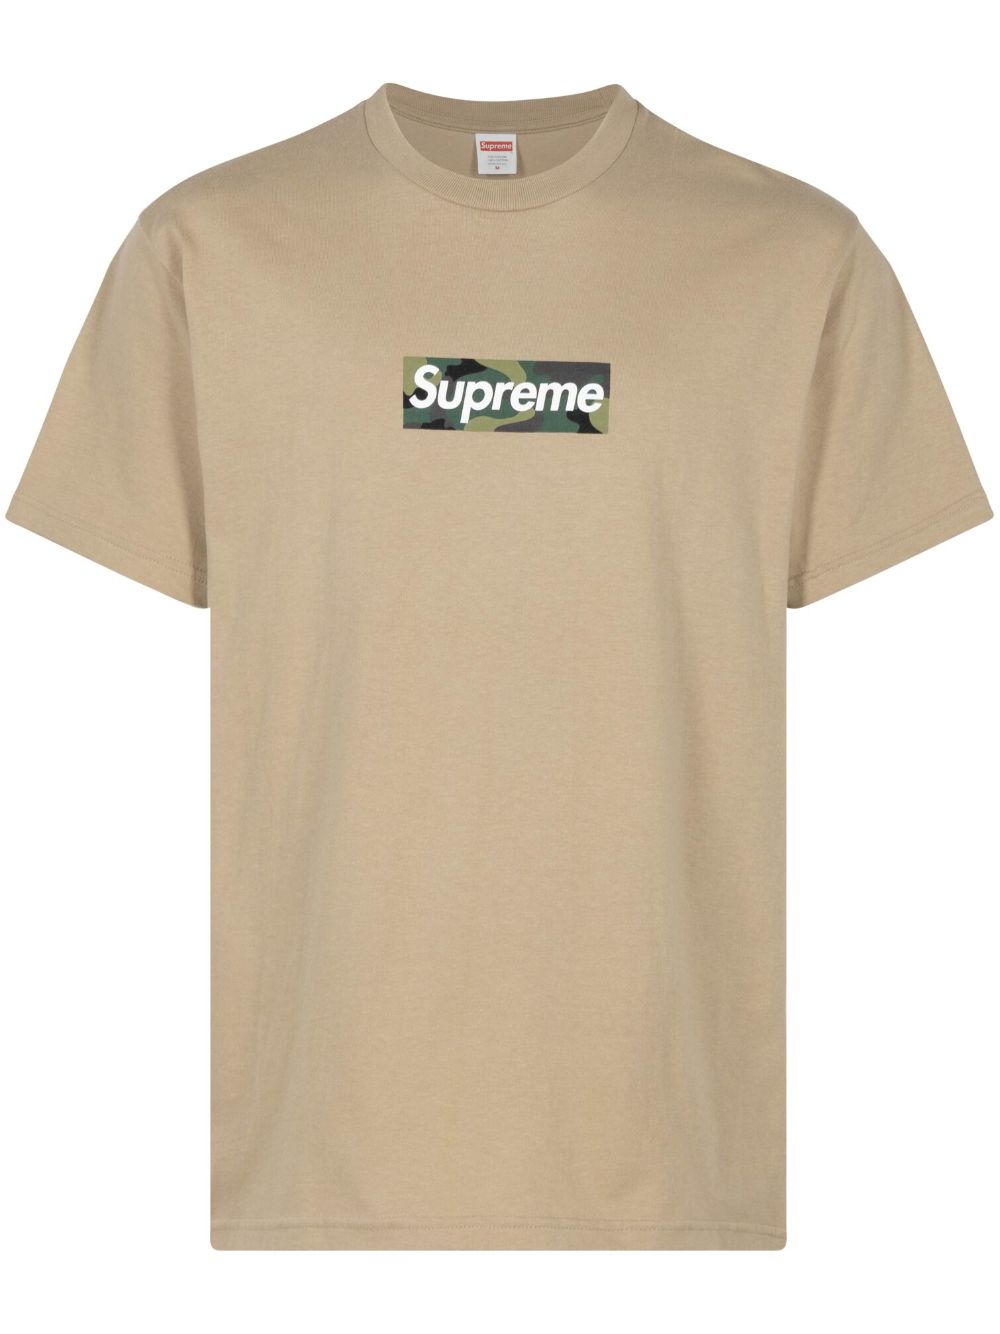 Supreme T-Shirt mit Logo - Nude von Supreme